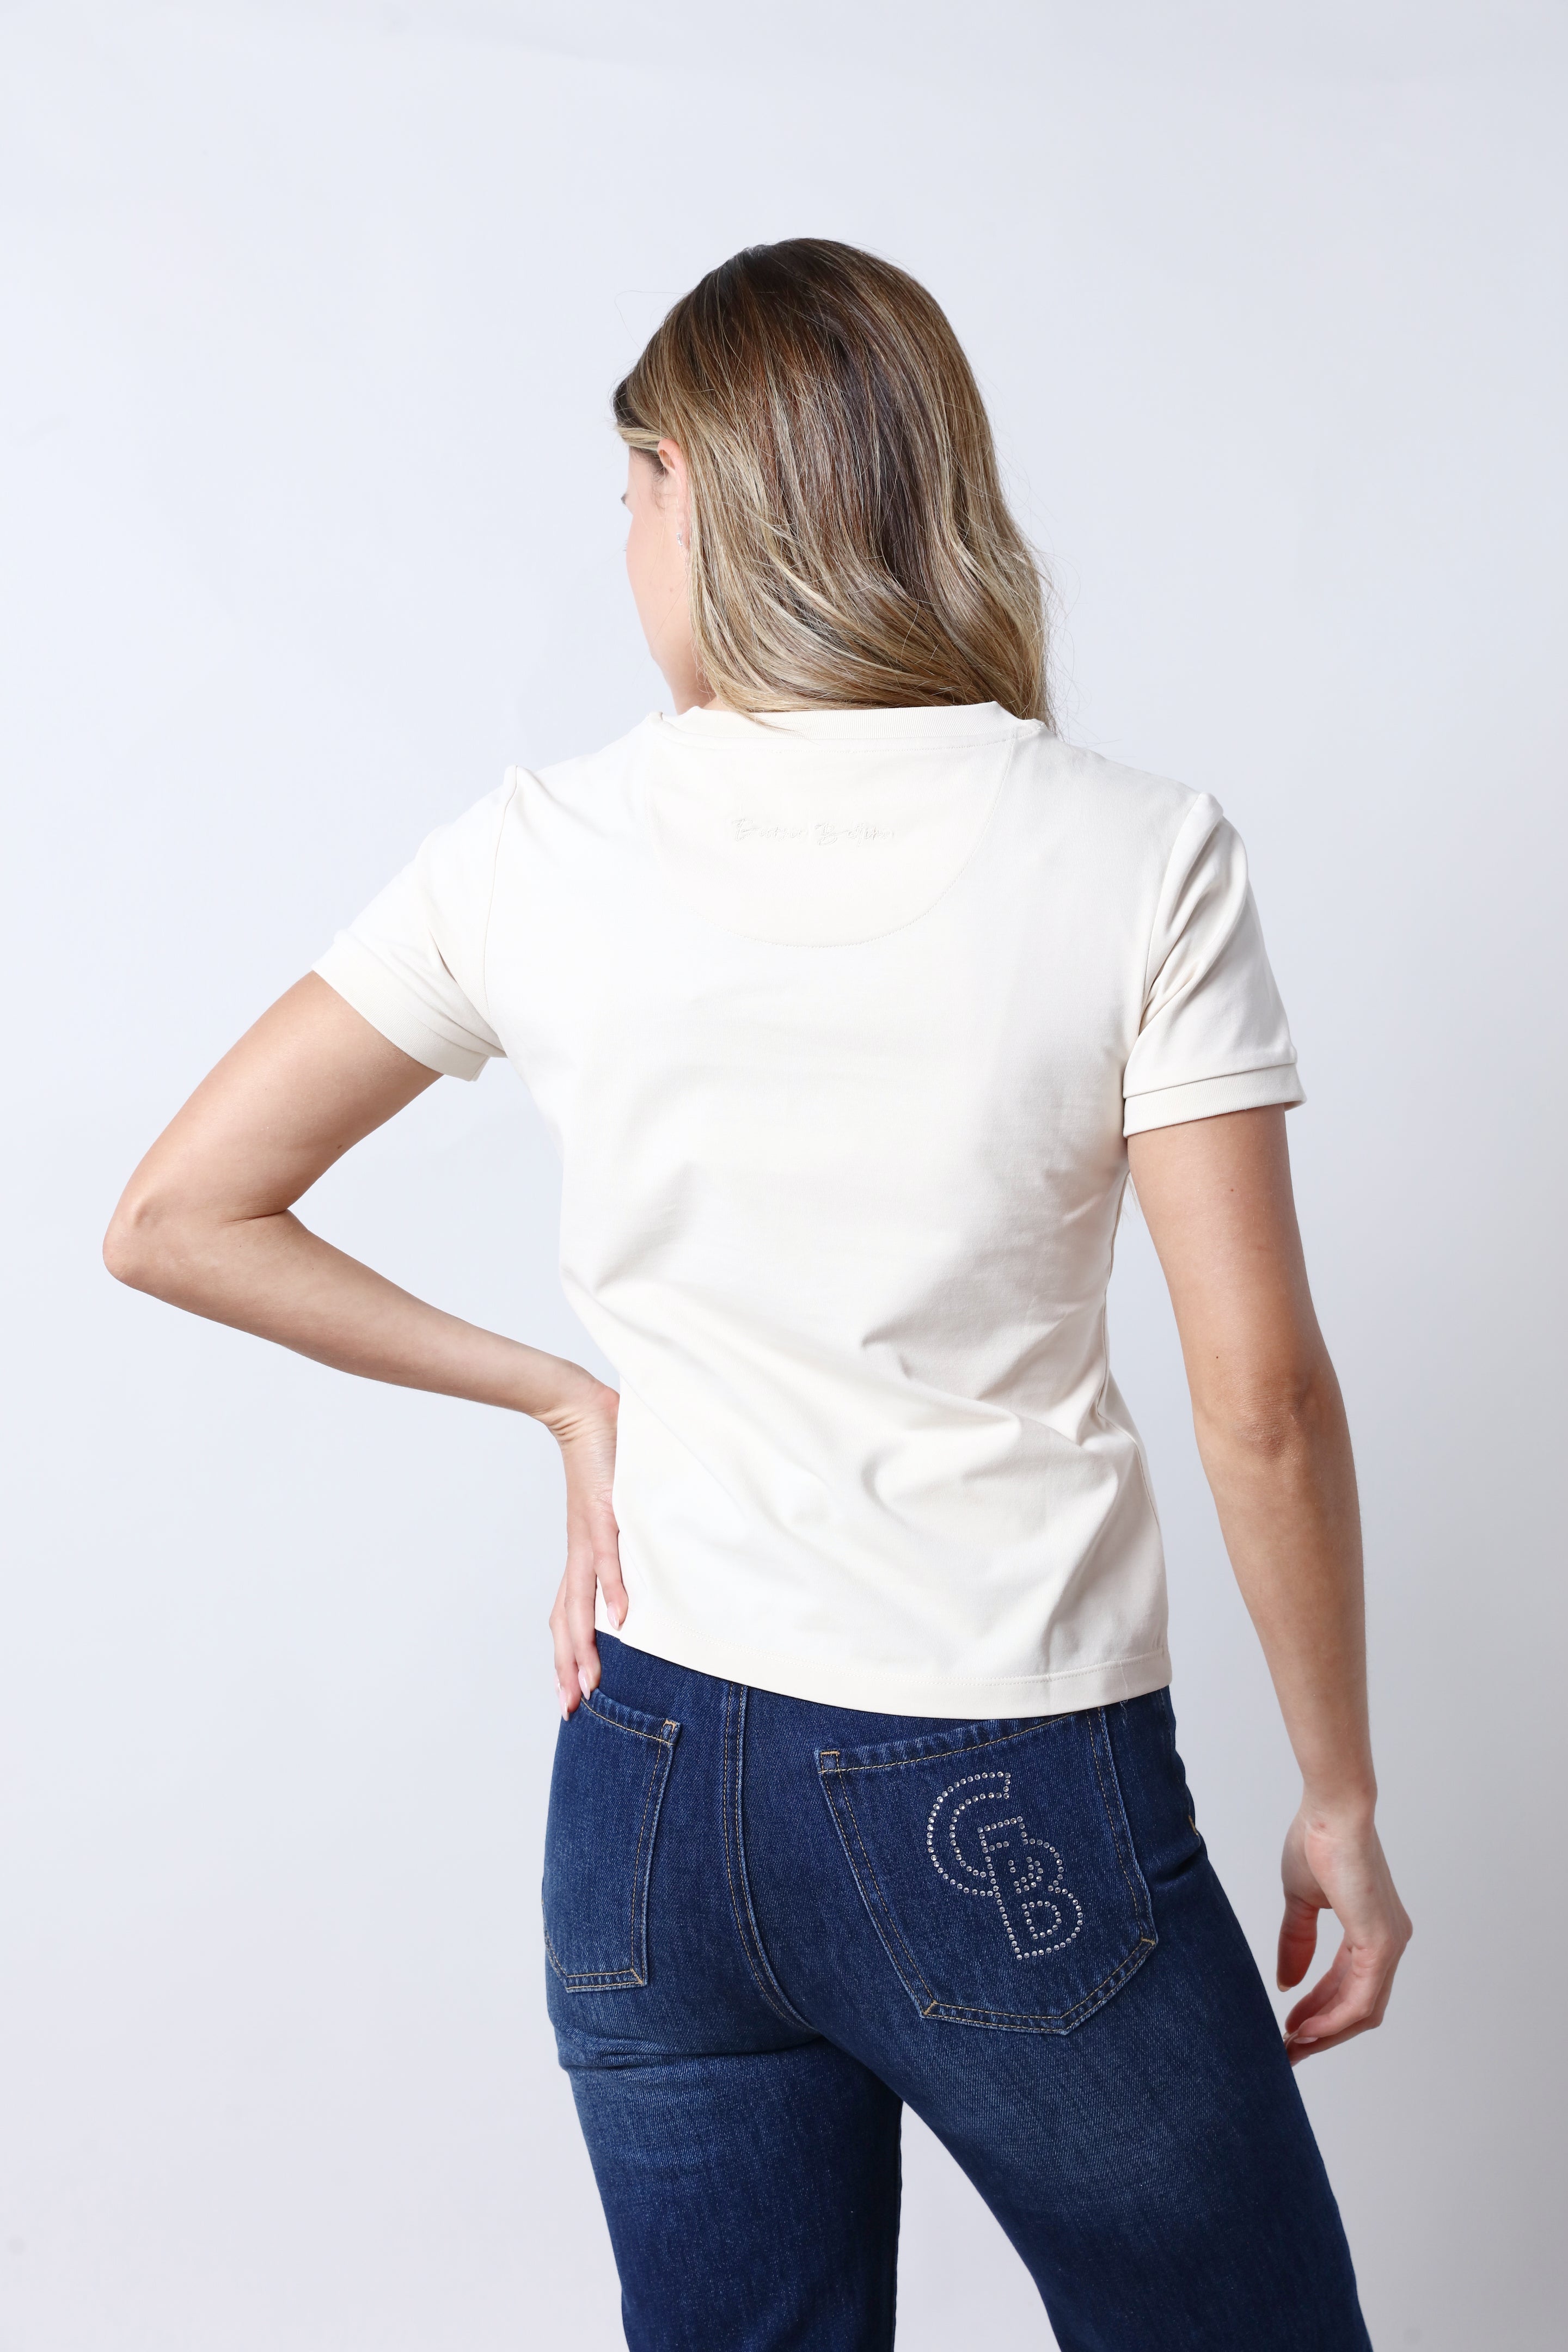 חולצת טי שירט GIORGIO BELLINI בצבע בז' לנשים